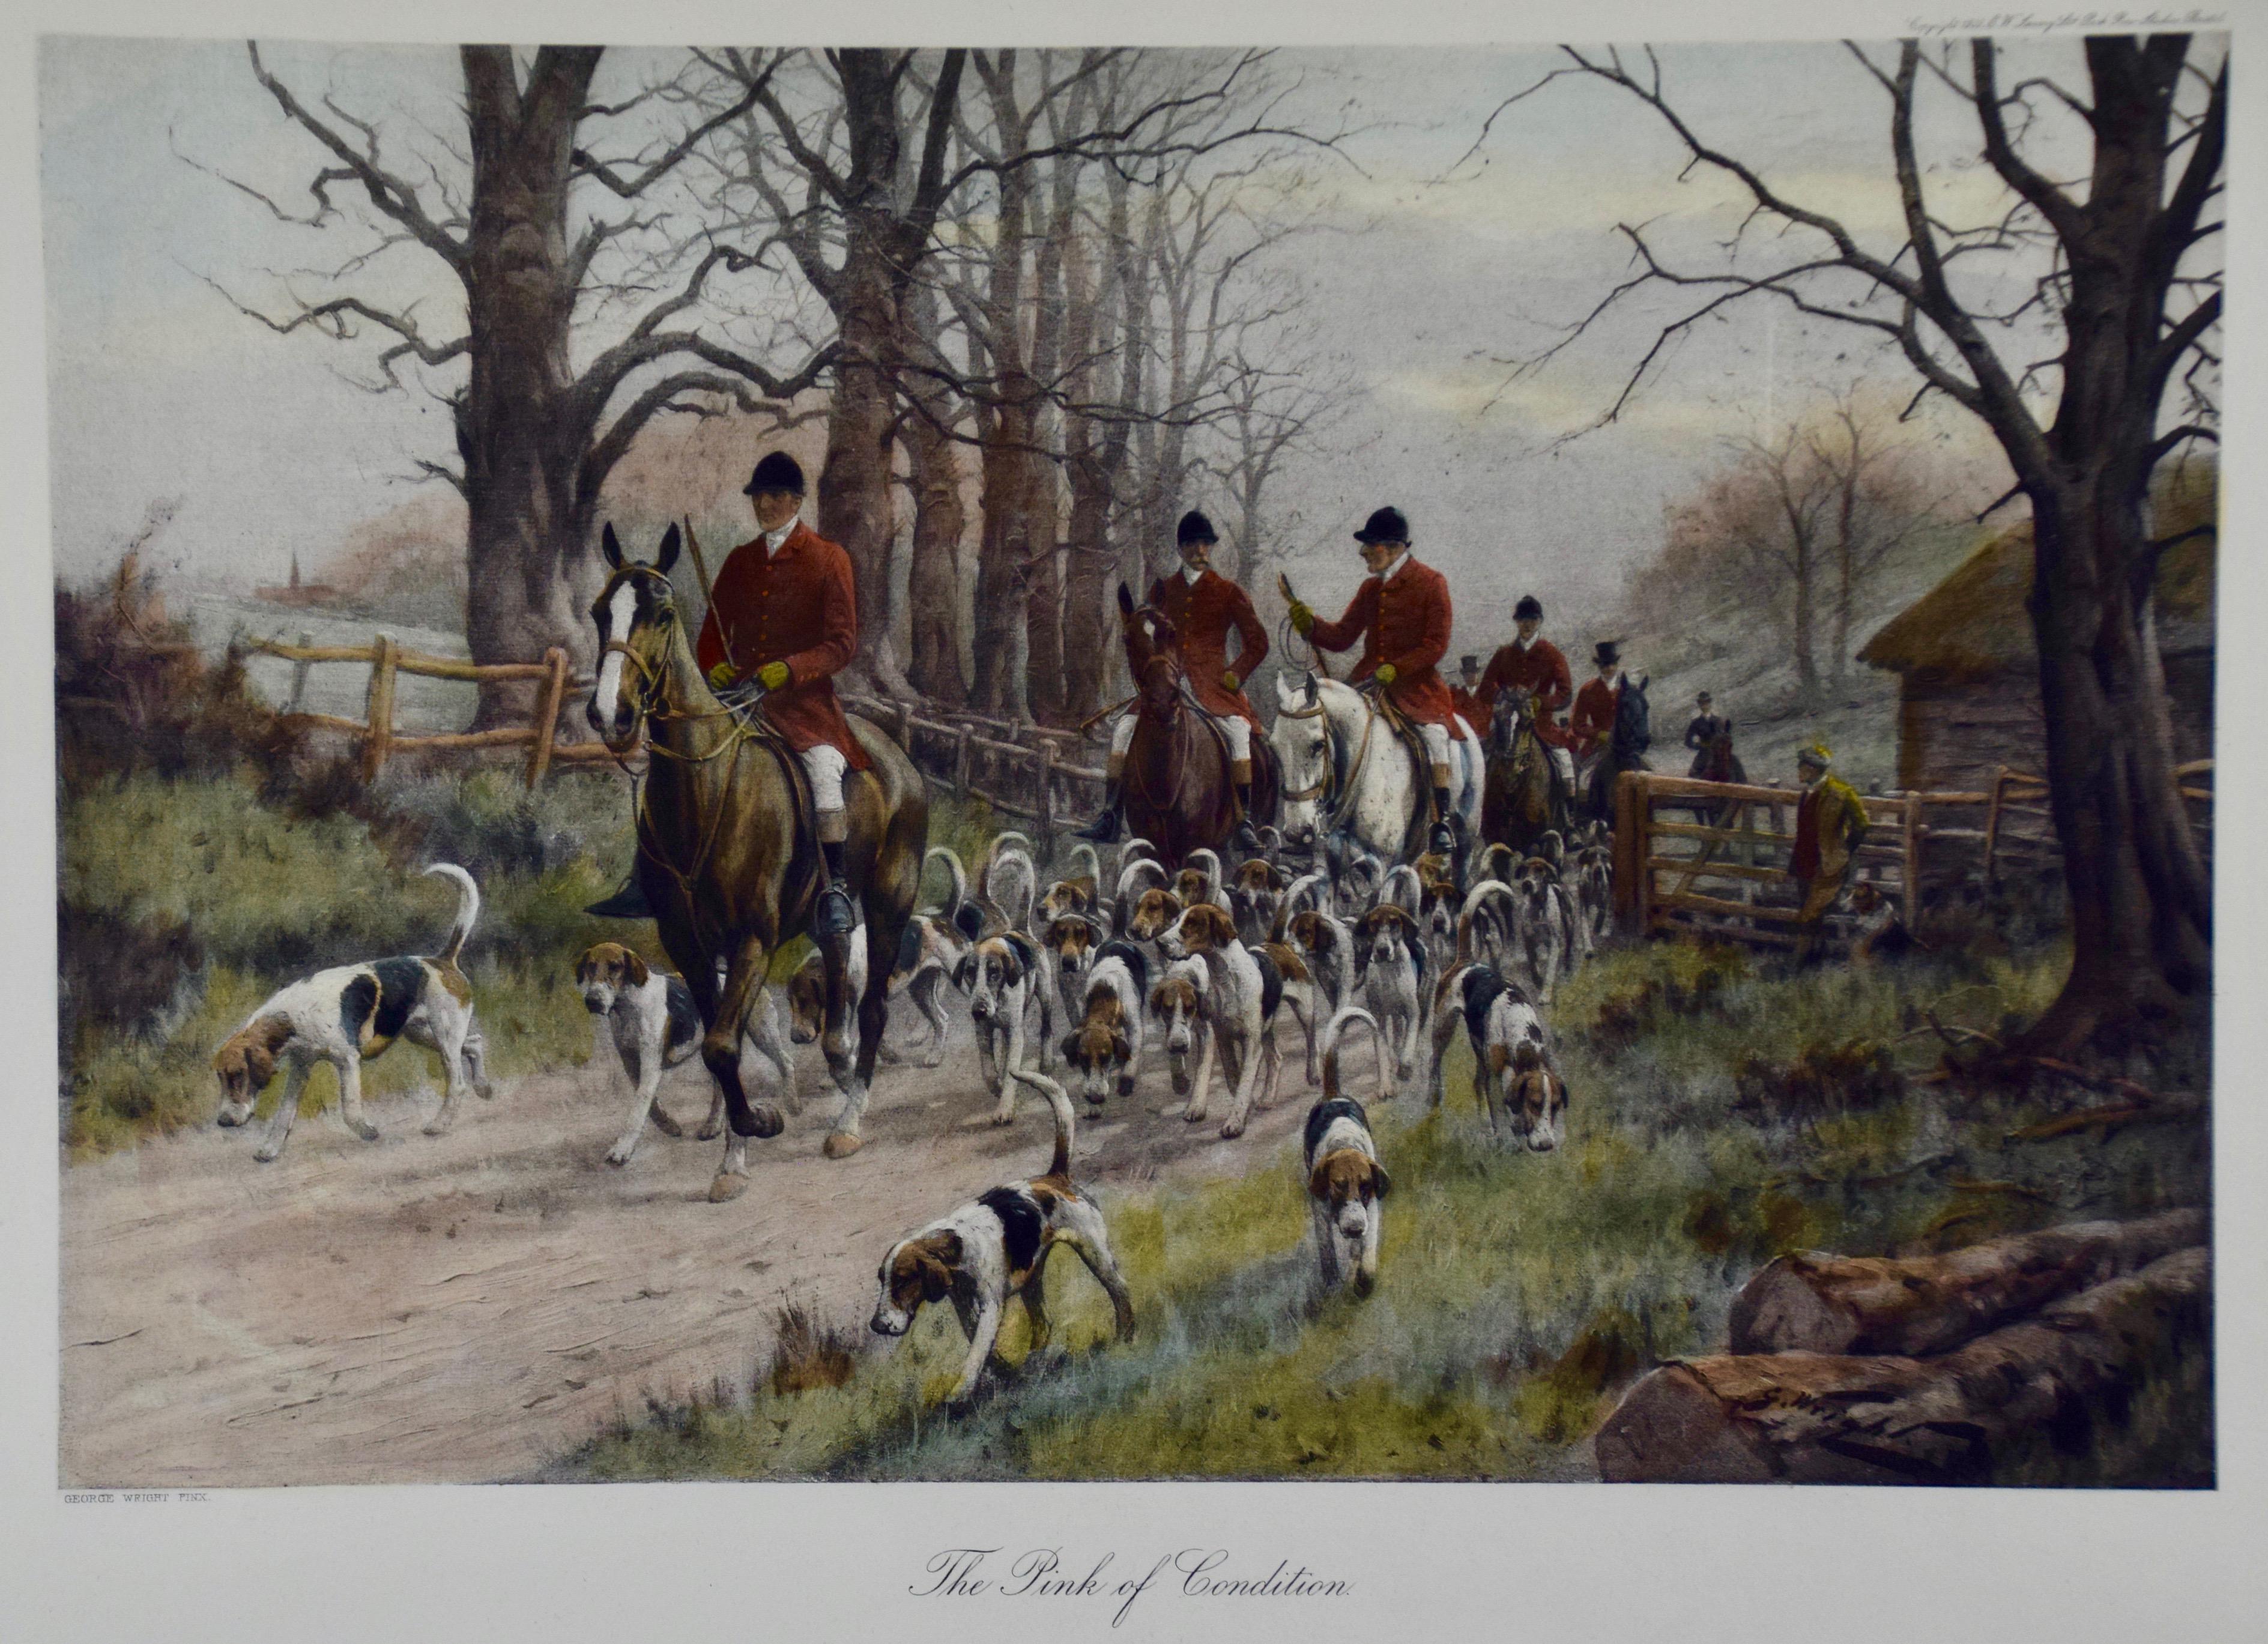 La scène de chasse de renard britannique « The Pink Of Condition » (le rose de l'état) - Print de George Wright 